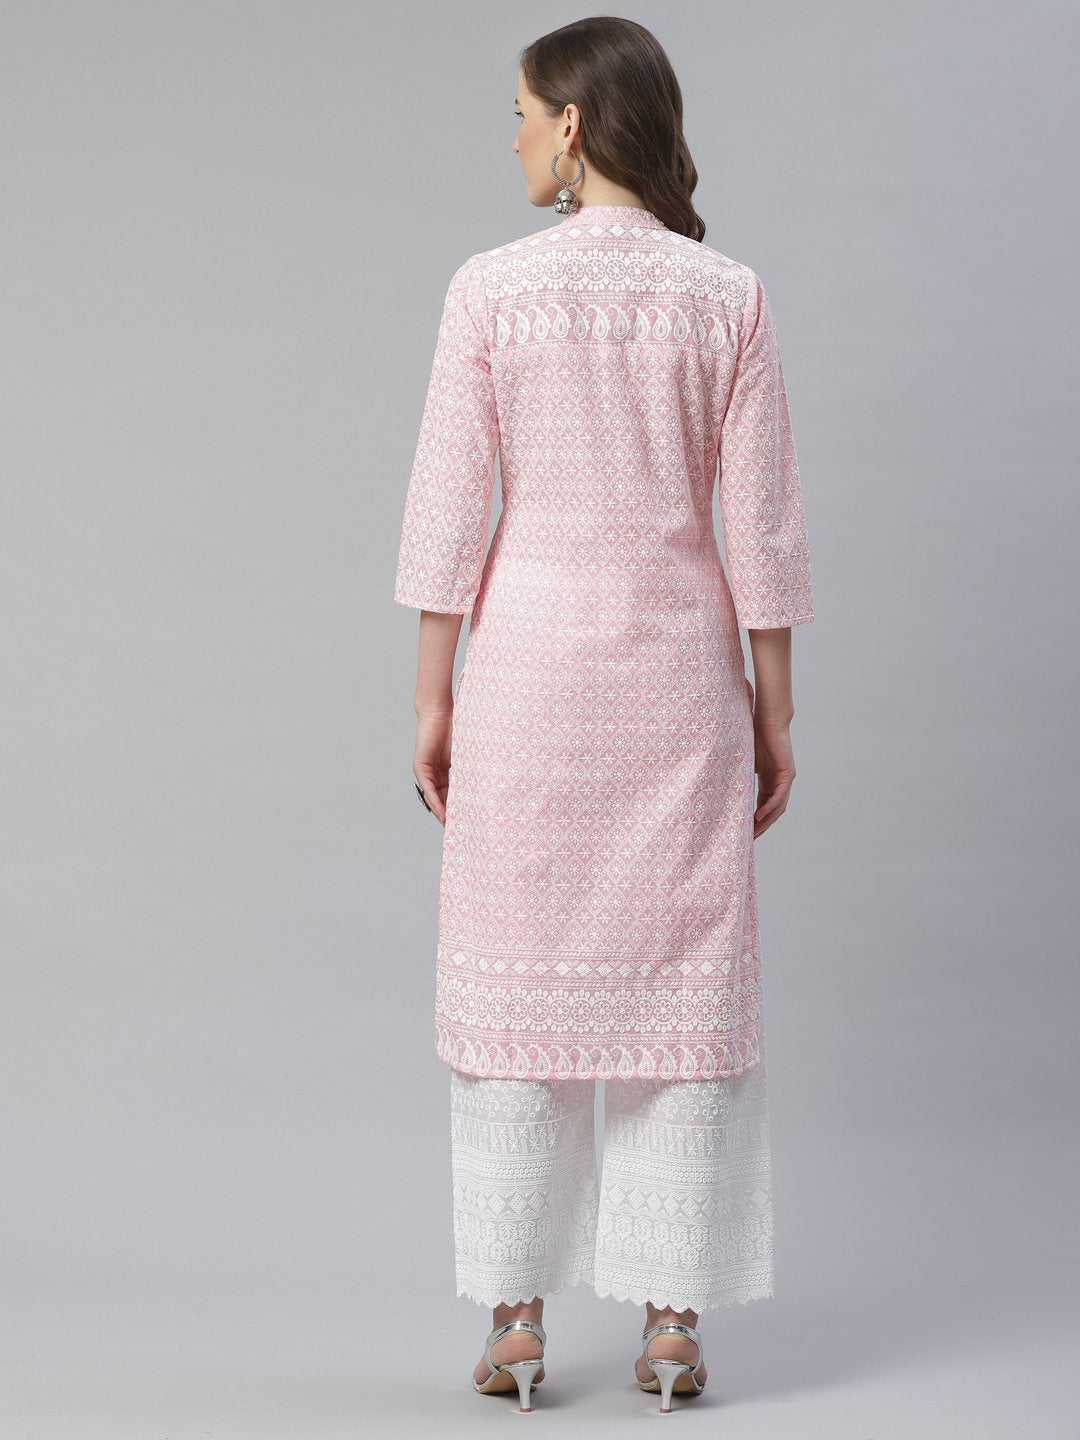 Women's Pink & White Chikankari Embroidered Kurta with Palazzos - Jompers